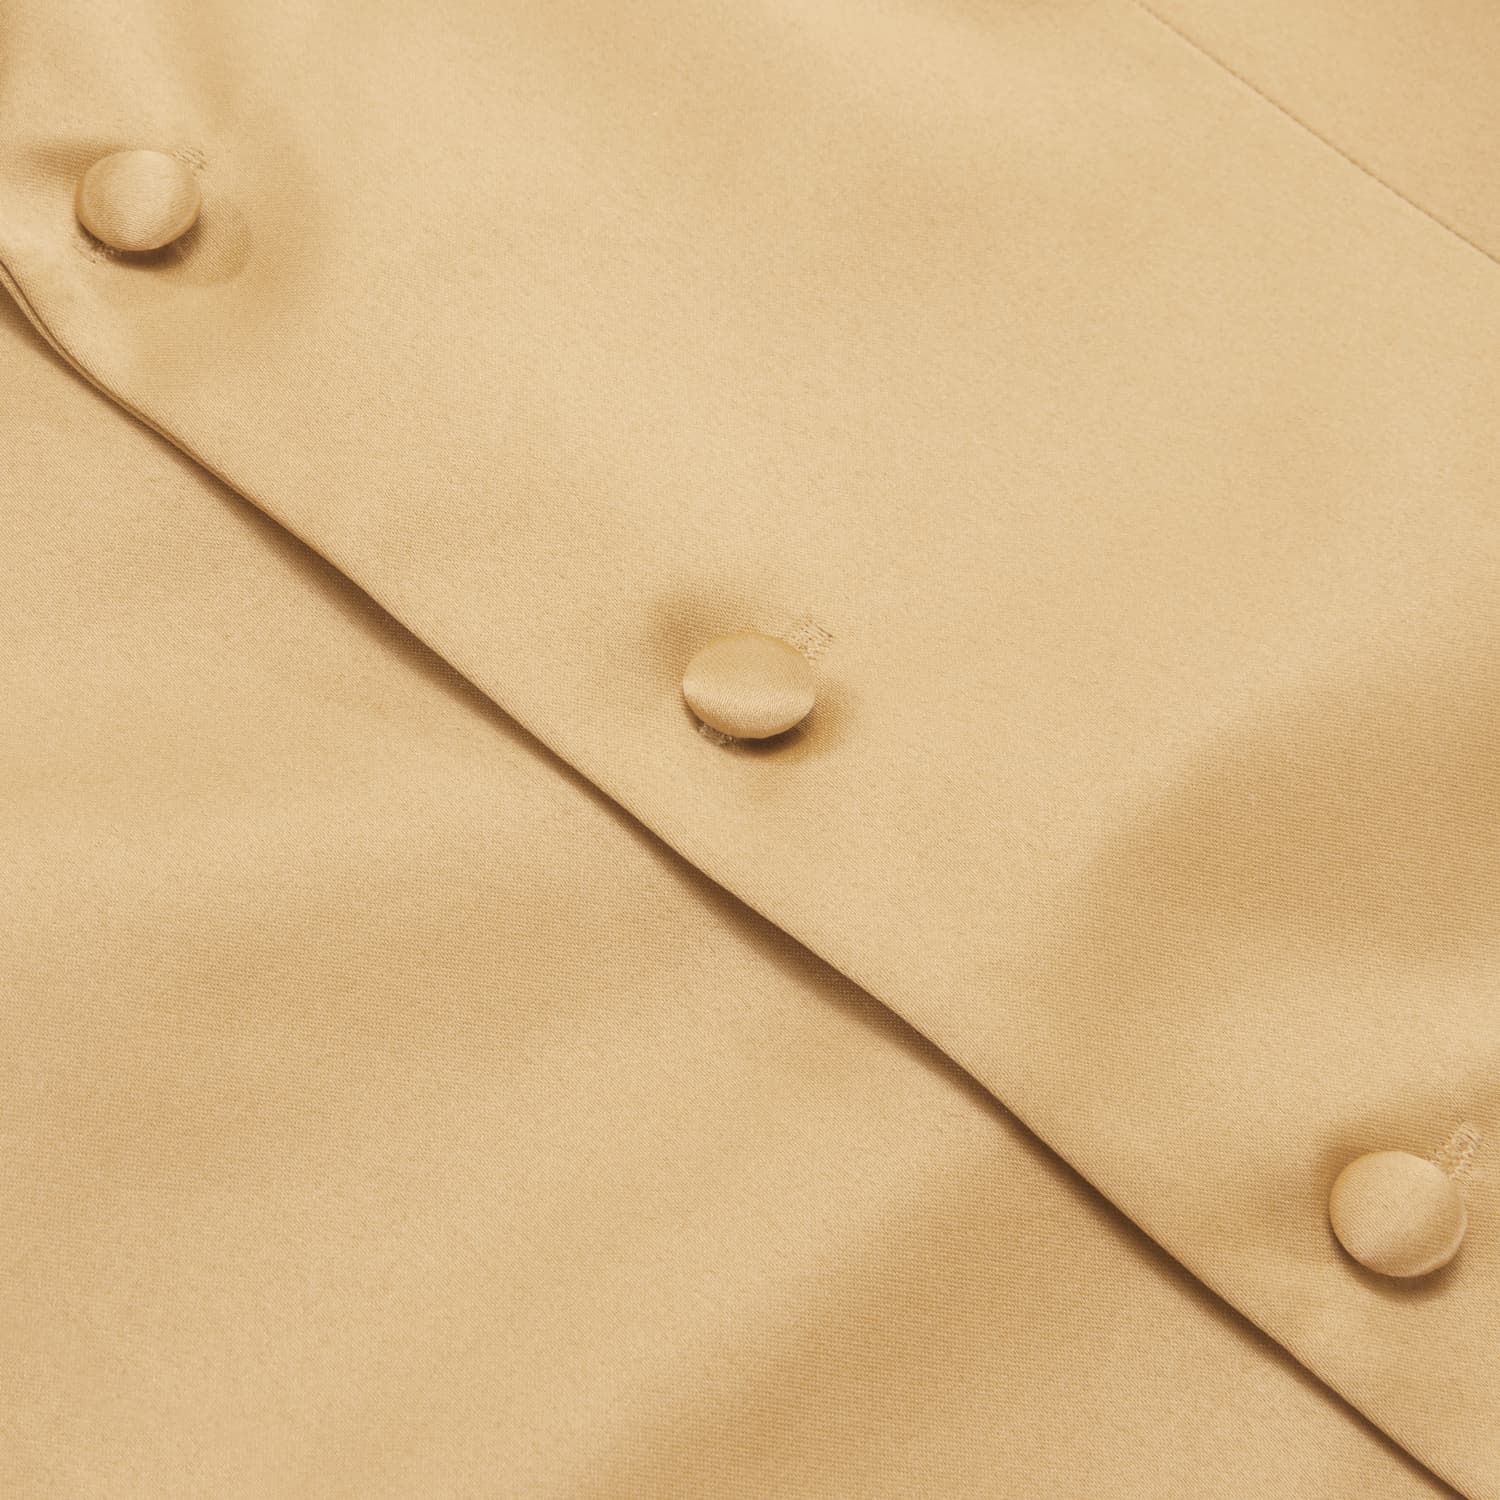 Hi-Tie Champagne Waistcoat Solid Notch lapels Men's Vest